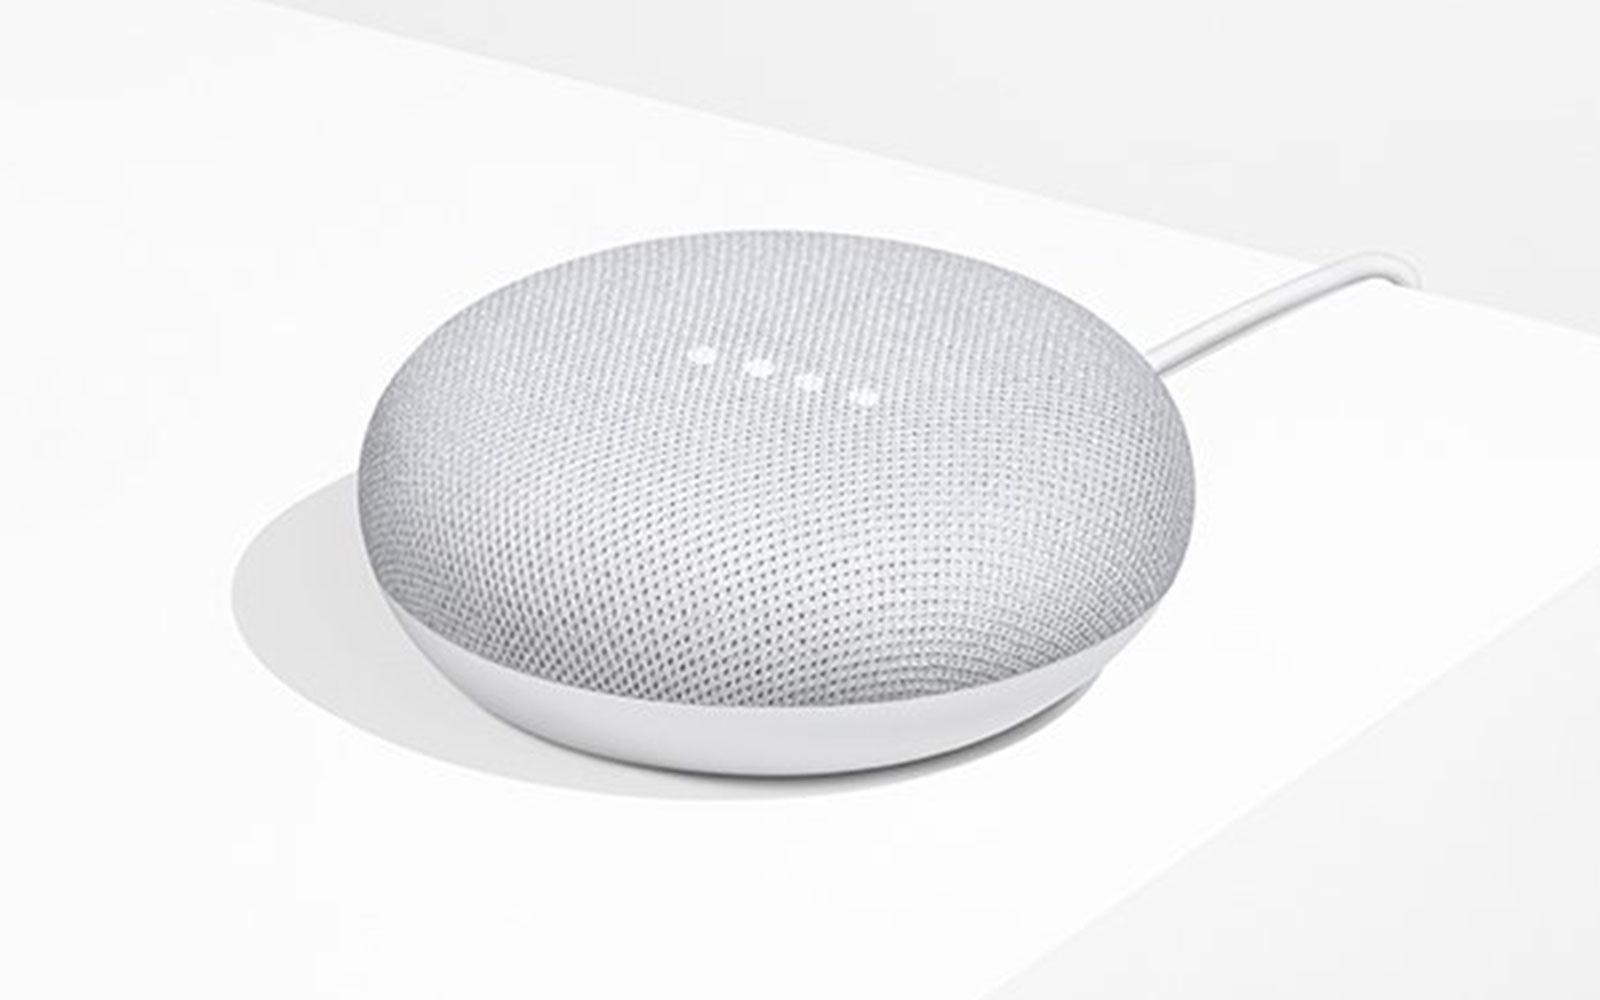 Loa thông minh Google Home Mini, Tích hợp trợ lý ảo Google Assistant, Ra lệnh cho chromecast bằng giọng nói...